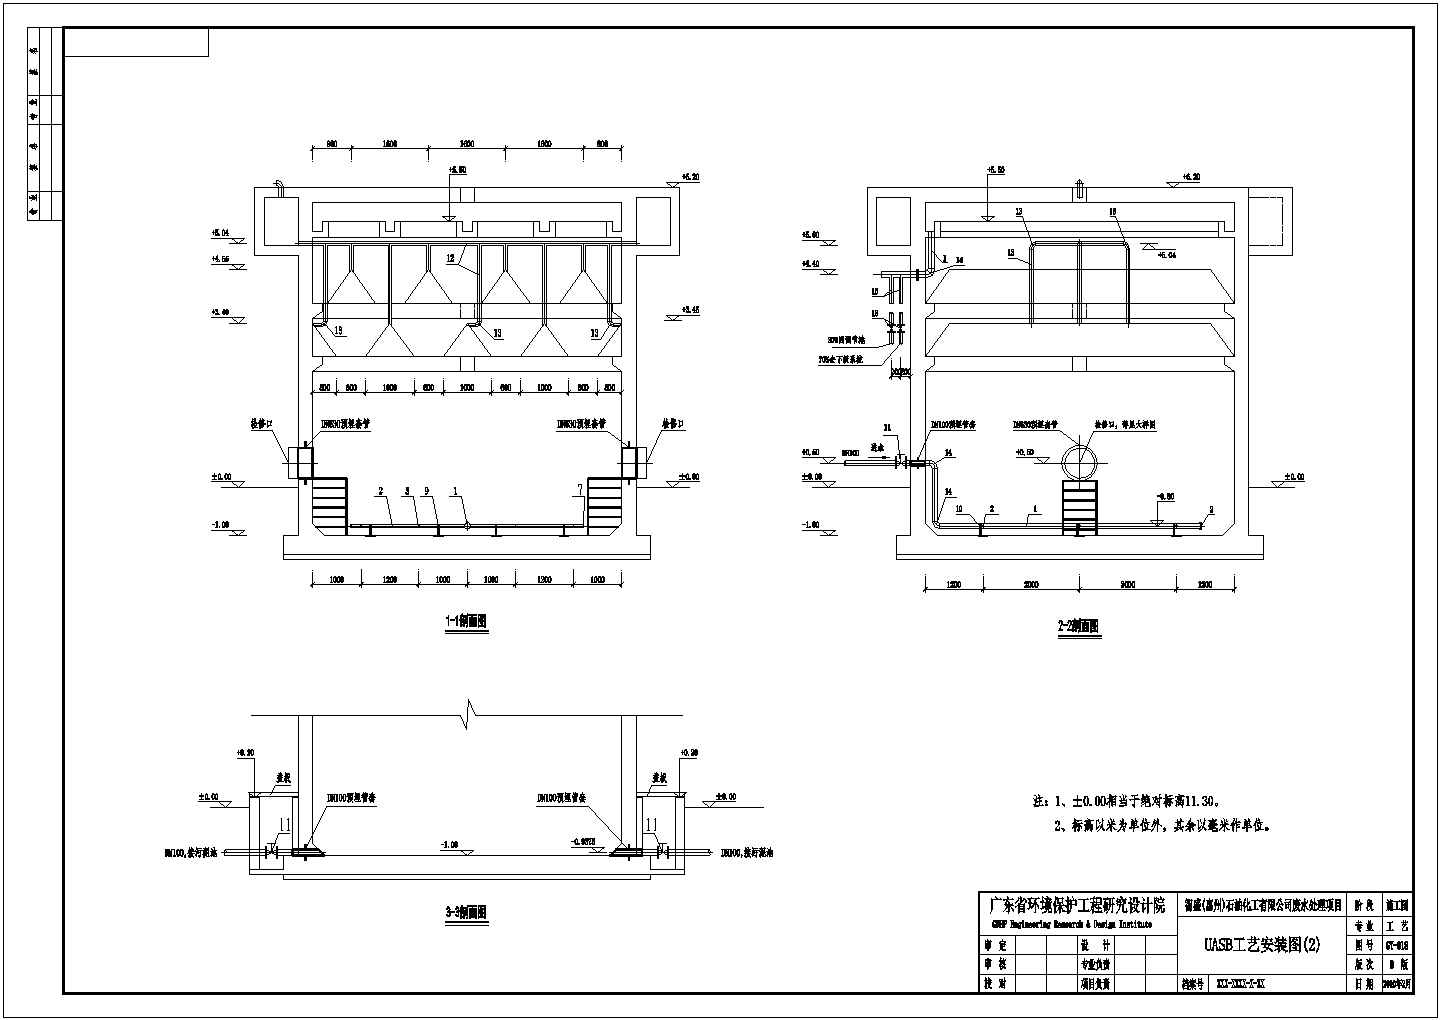 污水处理工程UASB反应器工艺图纸